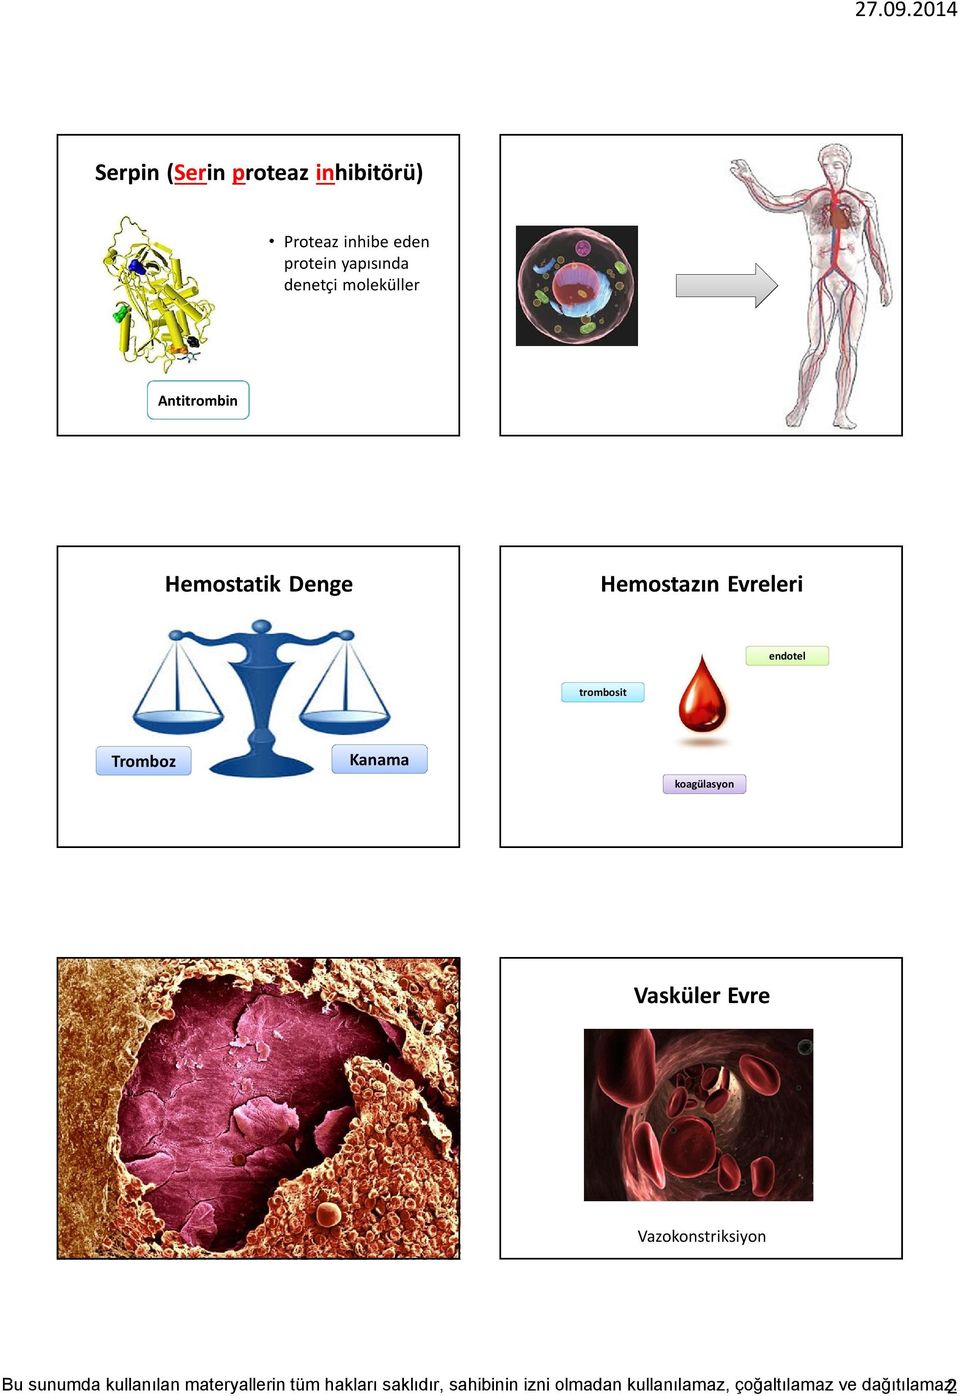 Hemostatik Denge Hemostazın Evreleri endotel trombosit